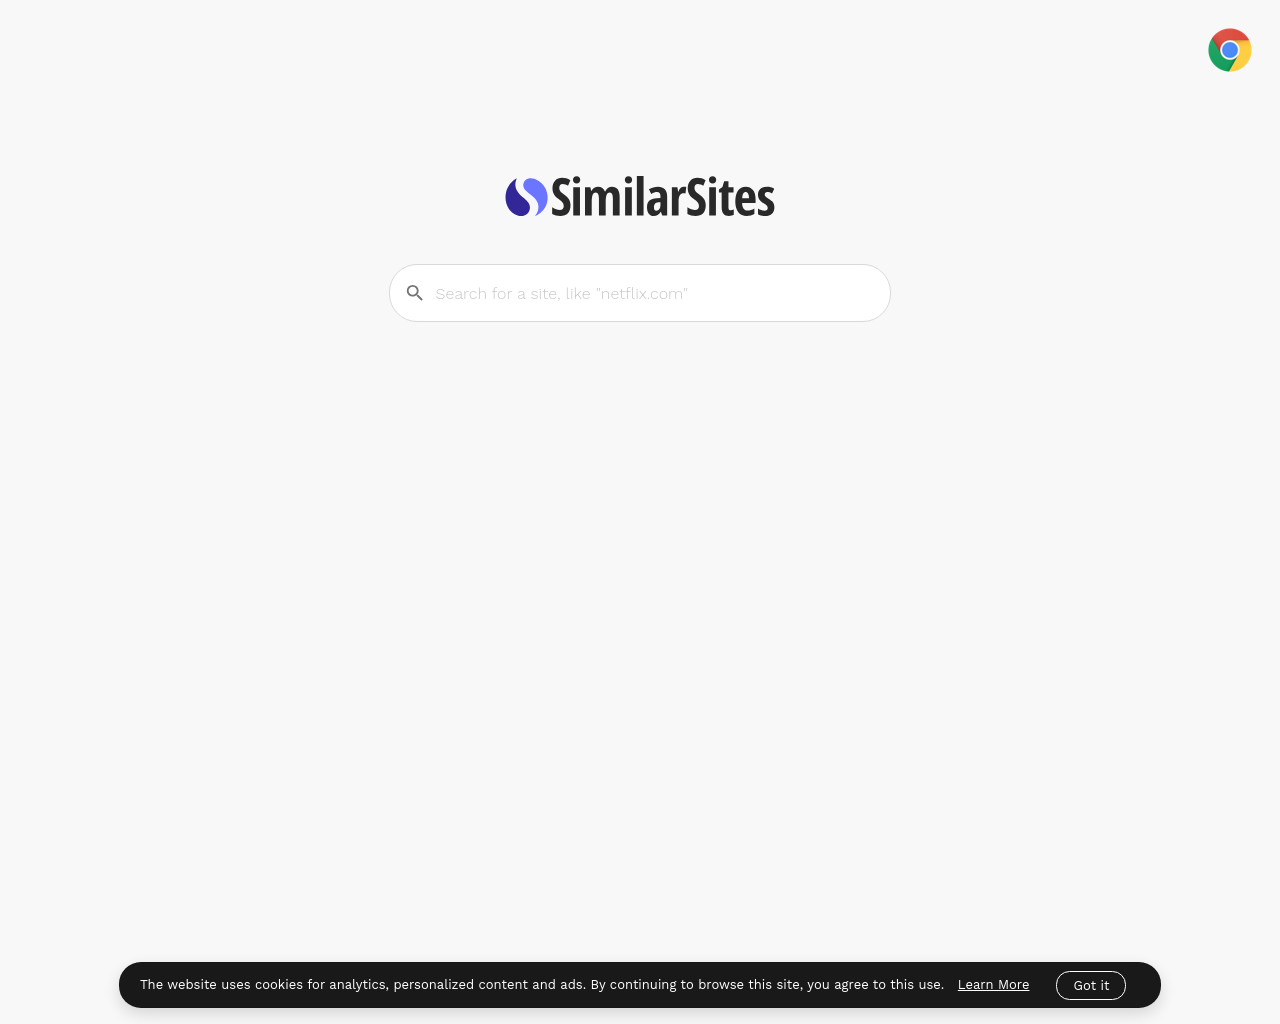 similarsites.com